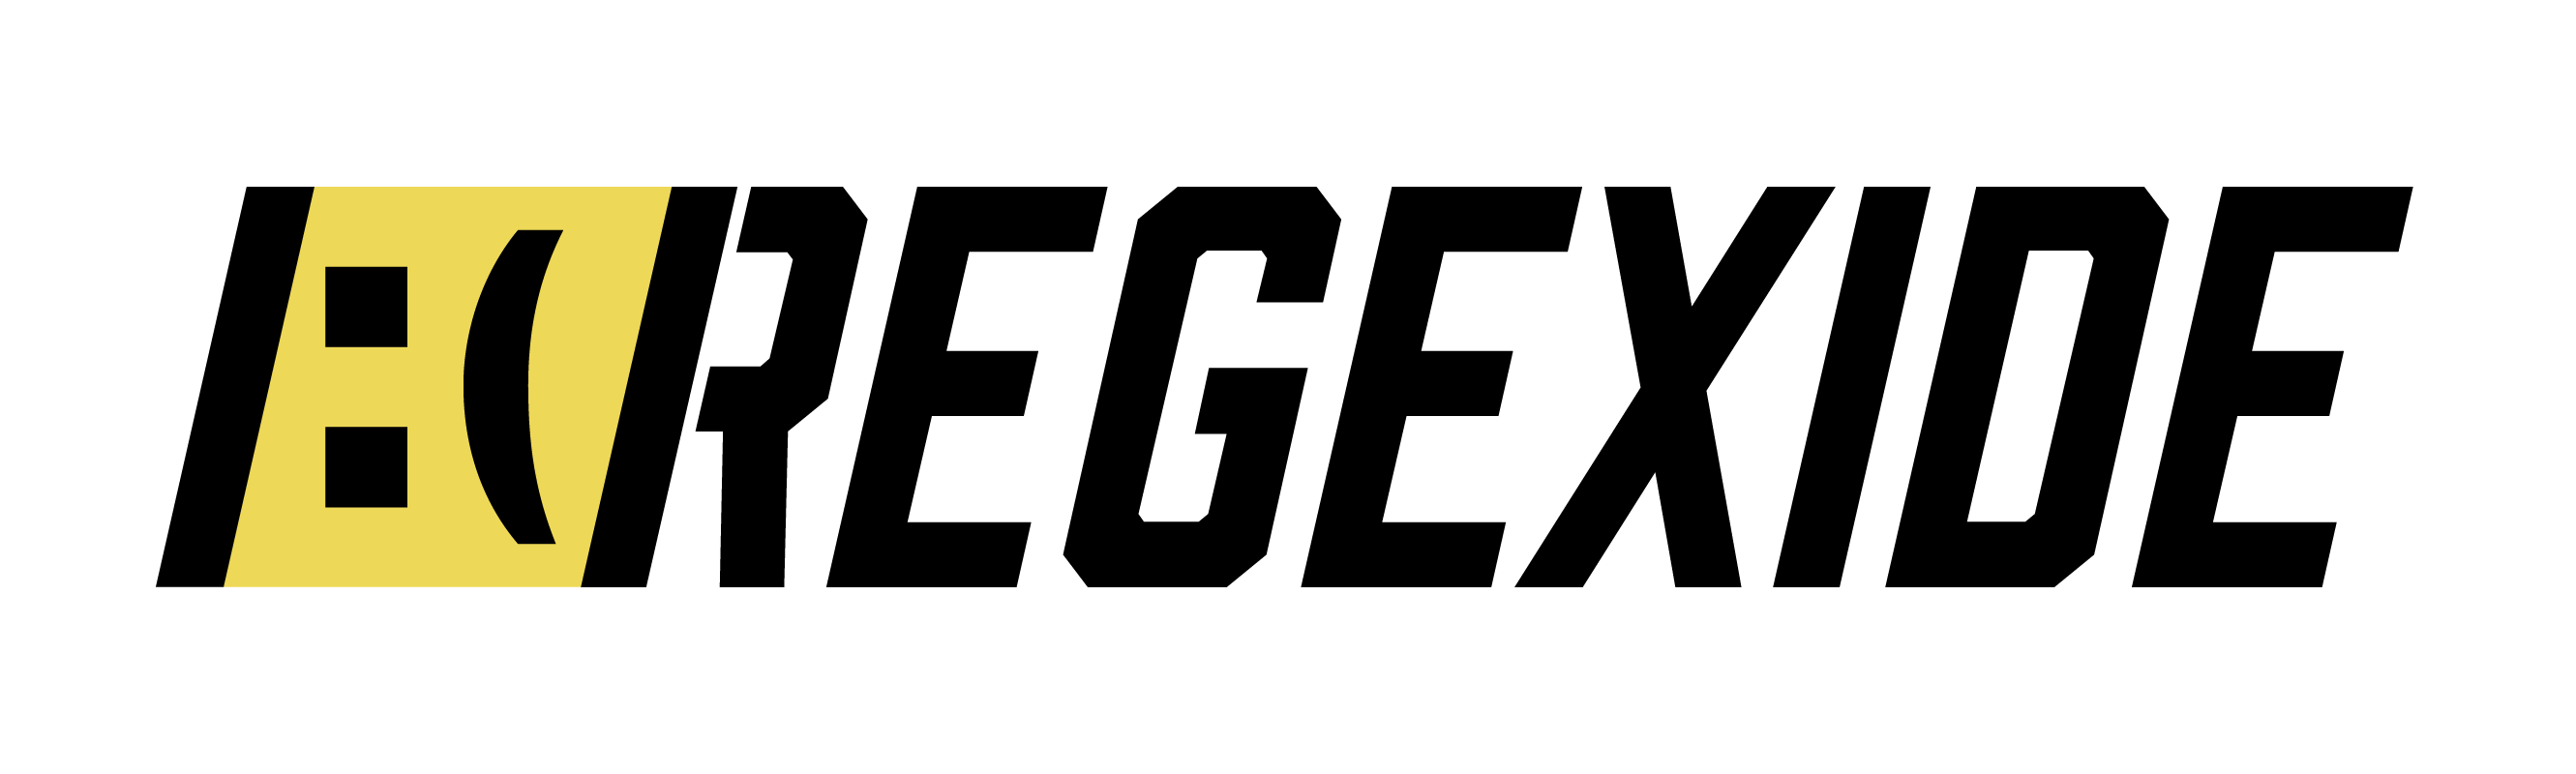 Regexide Logo